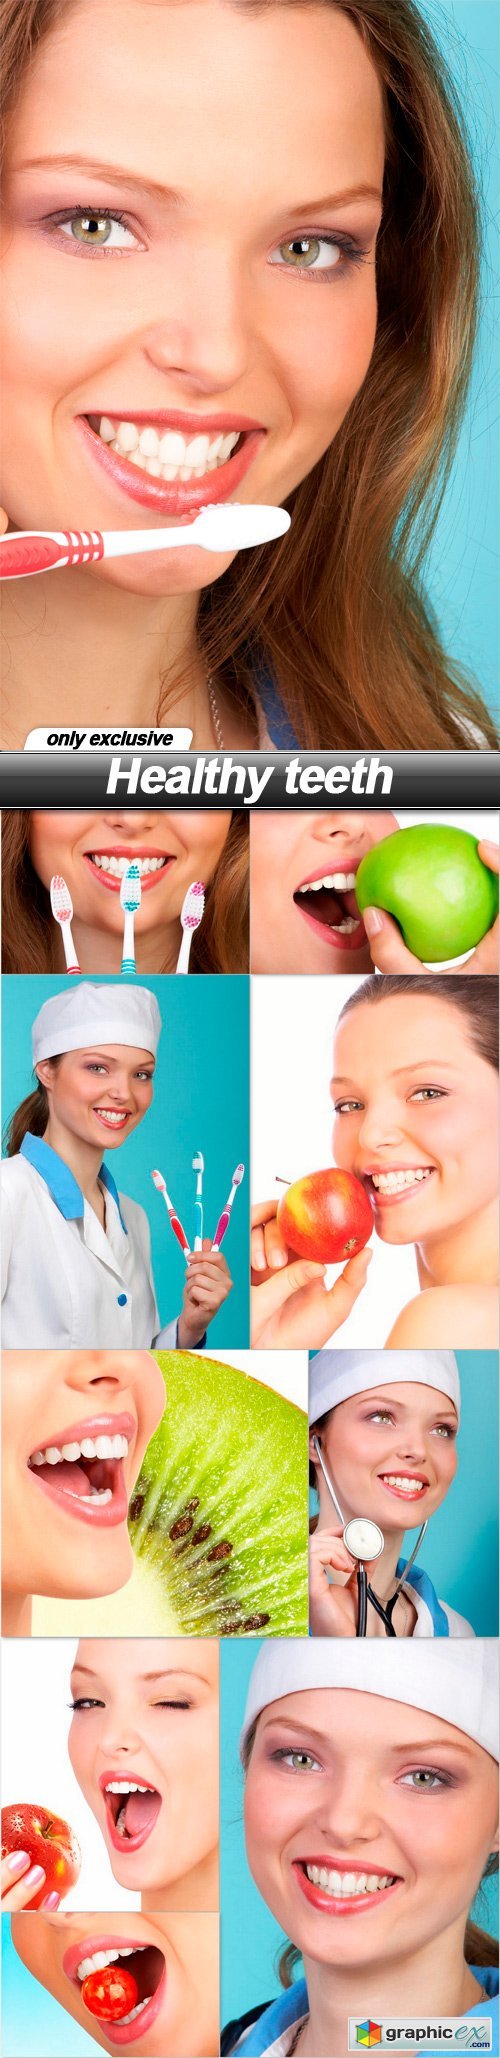 Healthy teeth - 10 UHQ JPEG